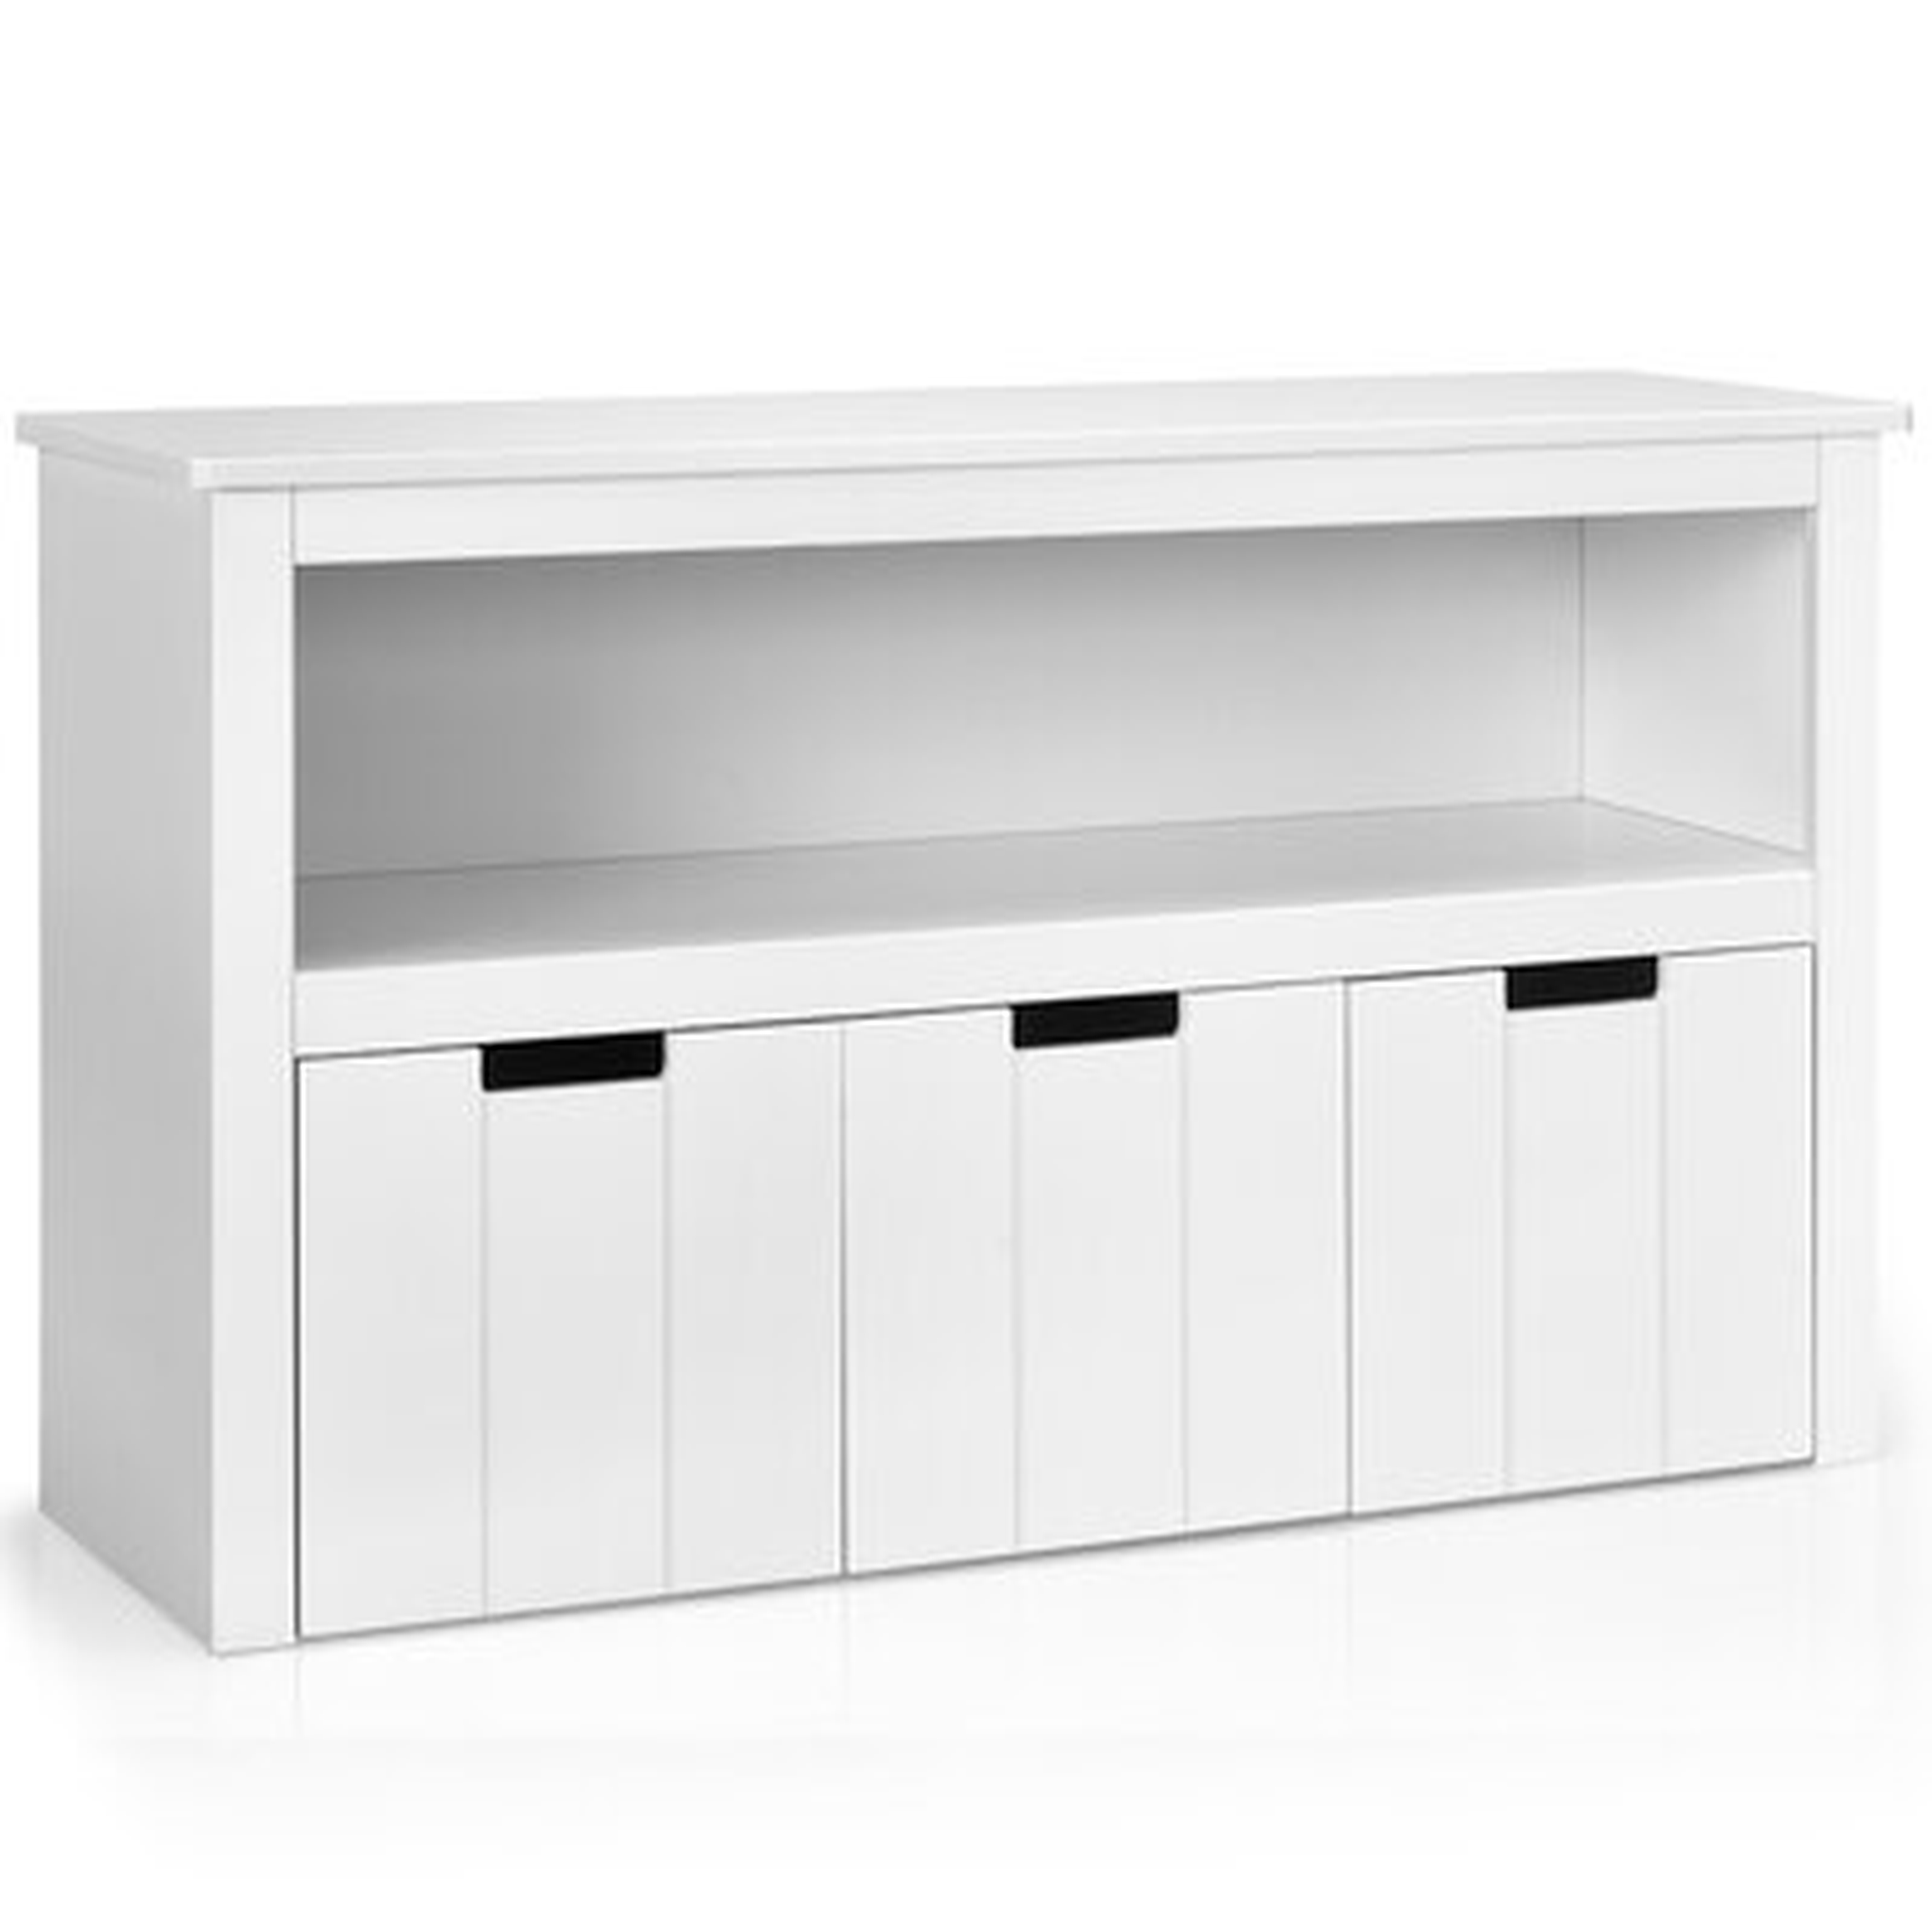 Isabelle & Max™ Kid Toy Storage Cabinet 3 Drawer Chest W/wheels Large Storage Cube Shelf - Wayfair